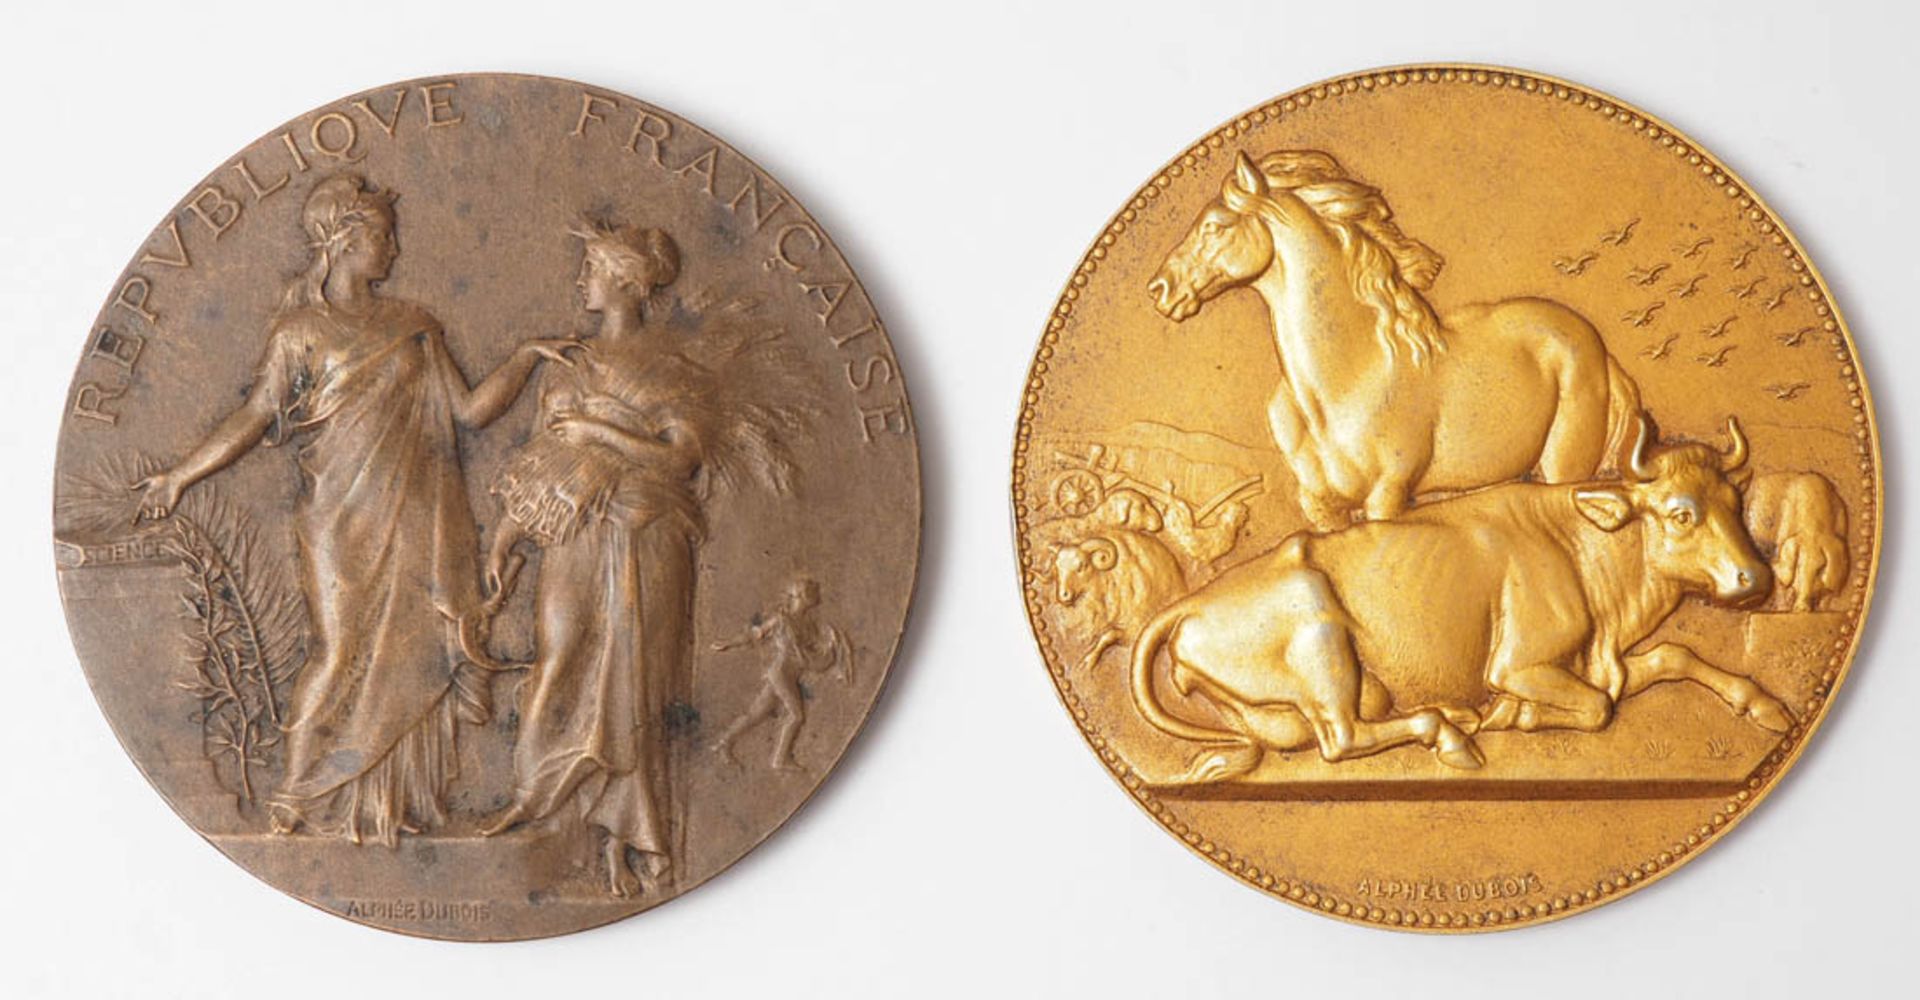 Dubois, Alphée, 1831 - 1905 Medaille, gestiftet vom Marquis de Moustier. Auf der Vorderseite